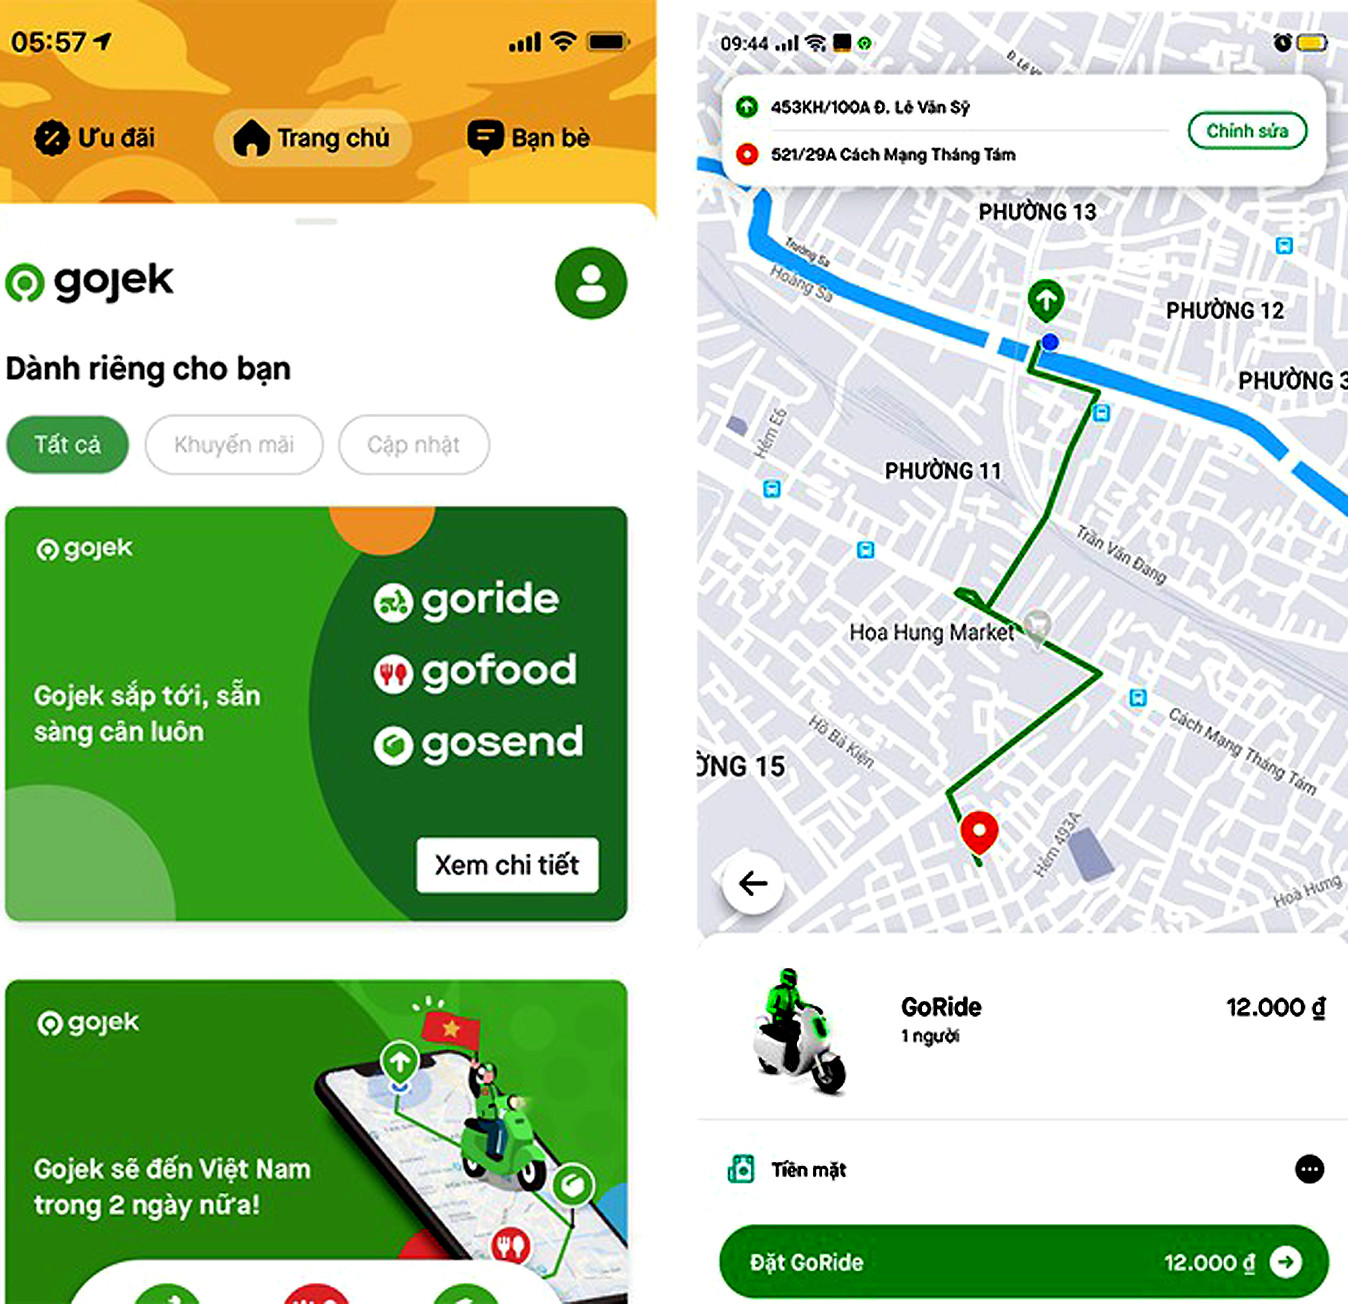 Gojek chính thức ra mắt ứng dụng và thương hiệu tại thị trường Việt Nam - Ảnh 4.